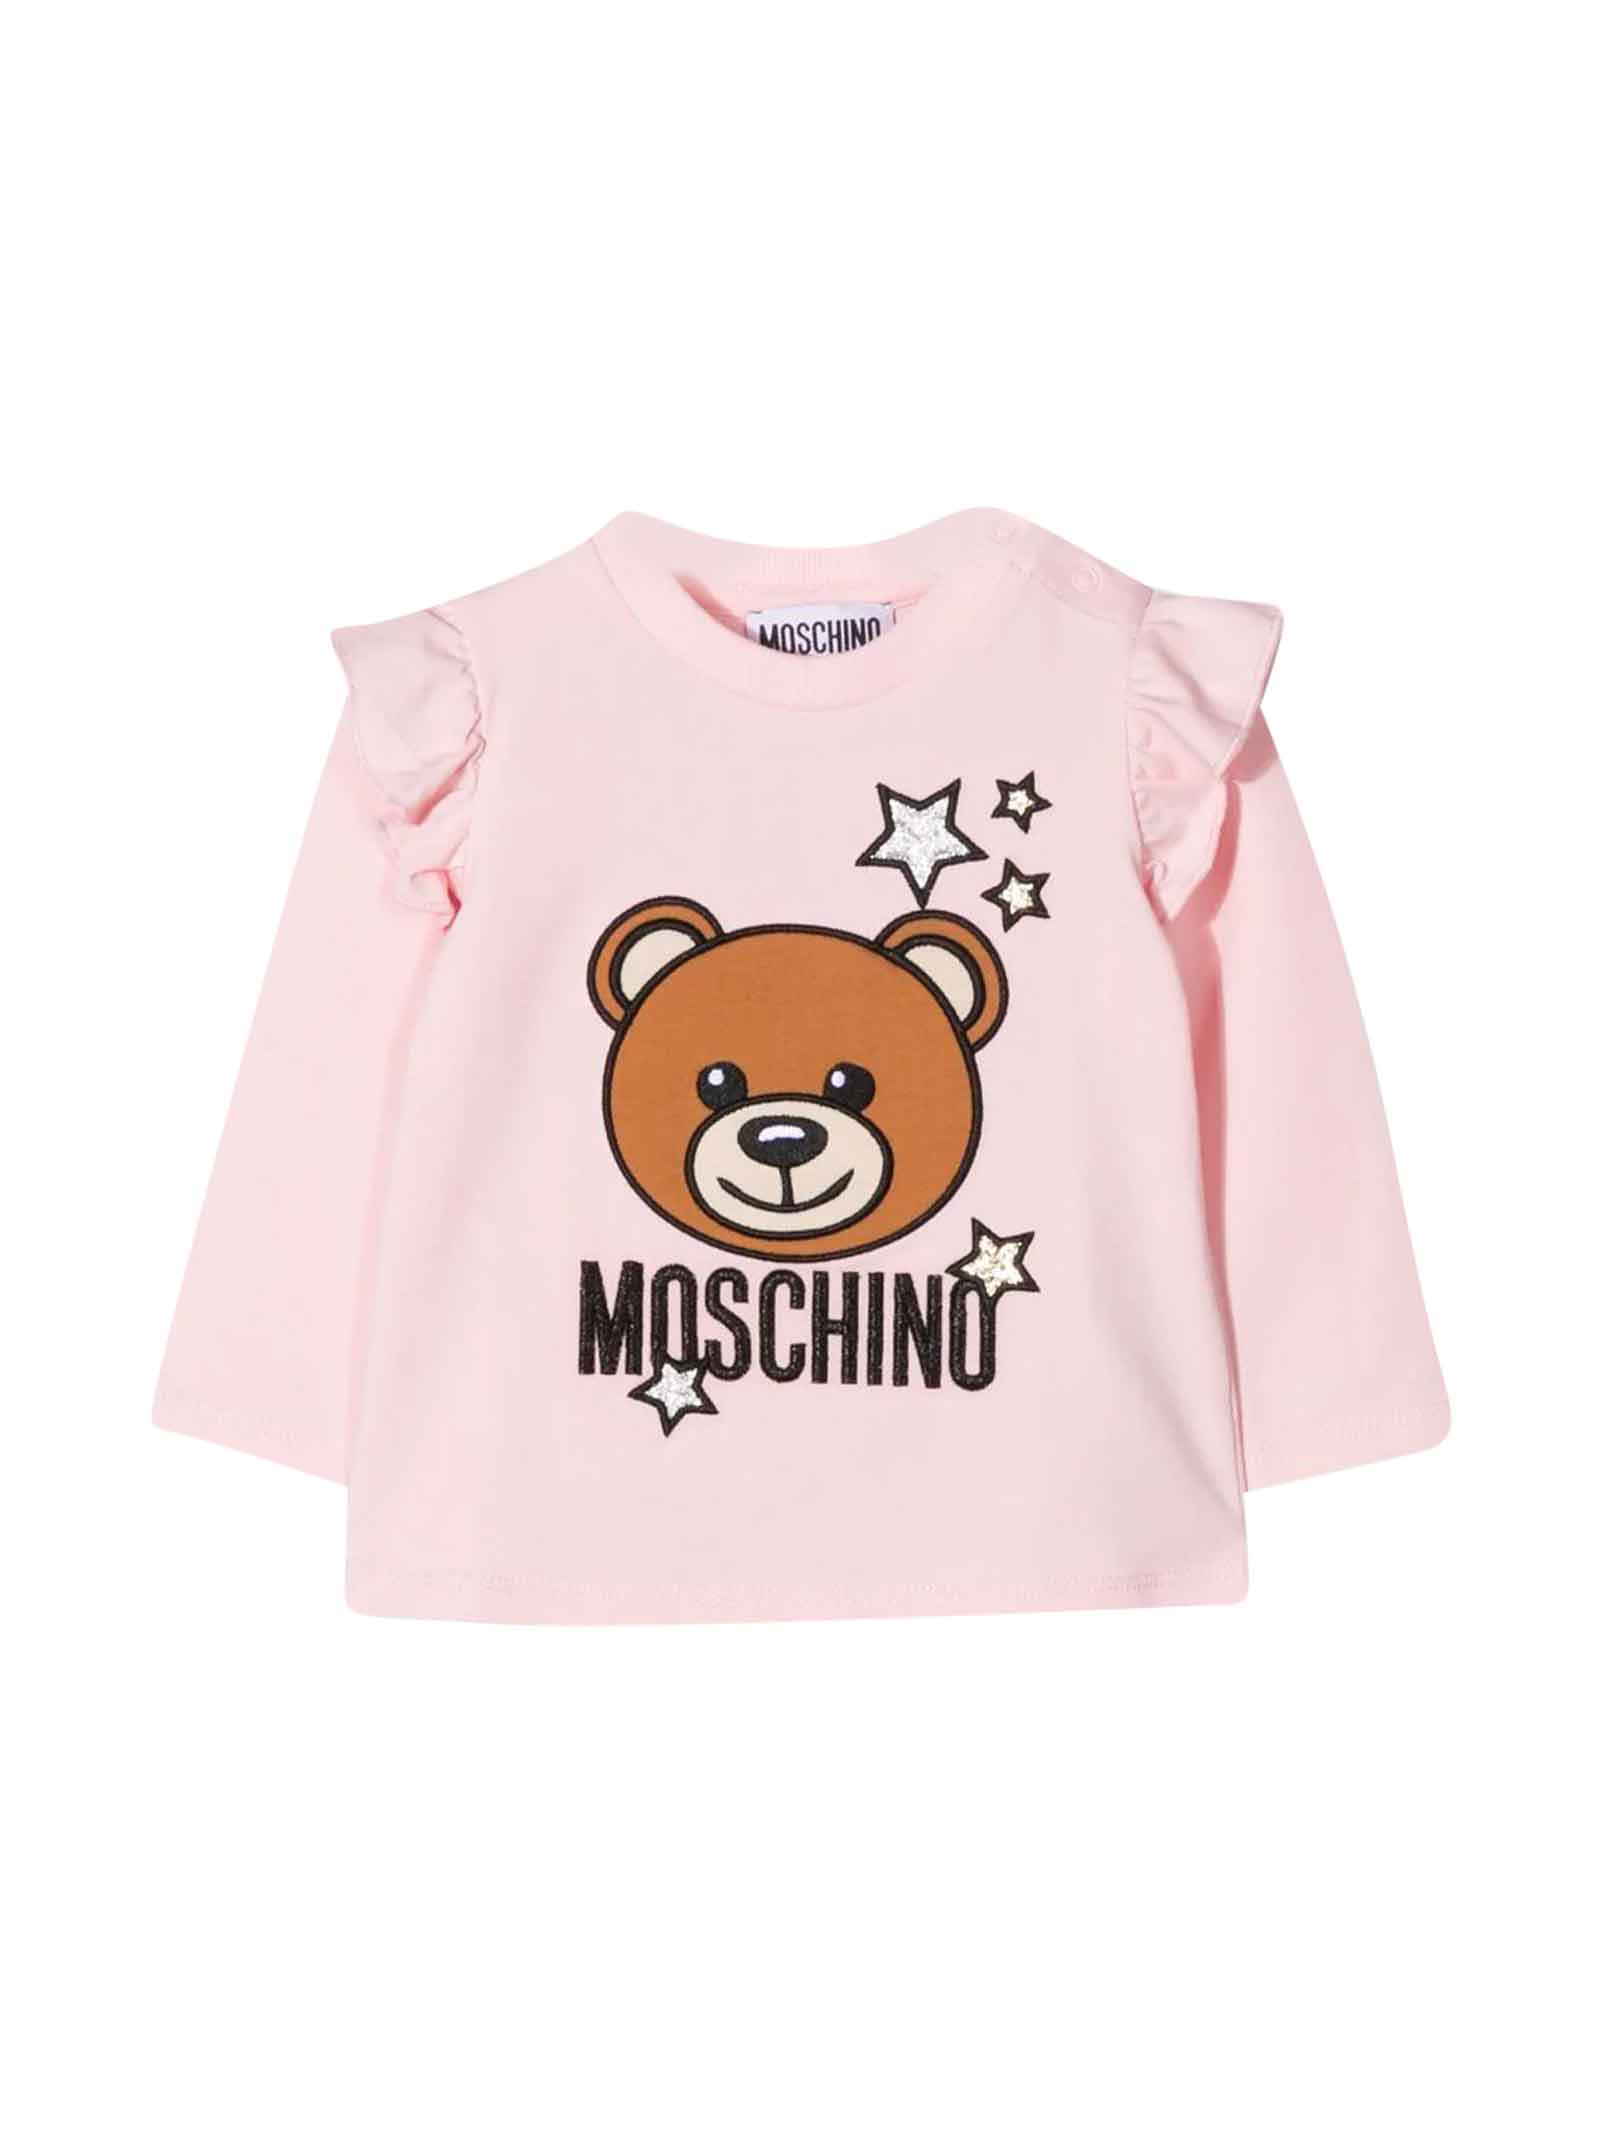 Moschino Newborn Pink T-shirt